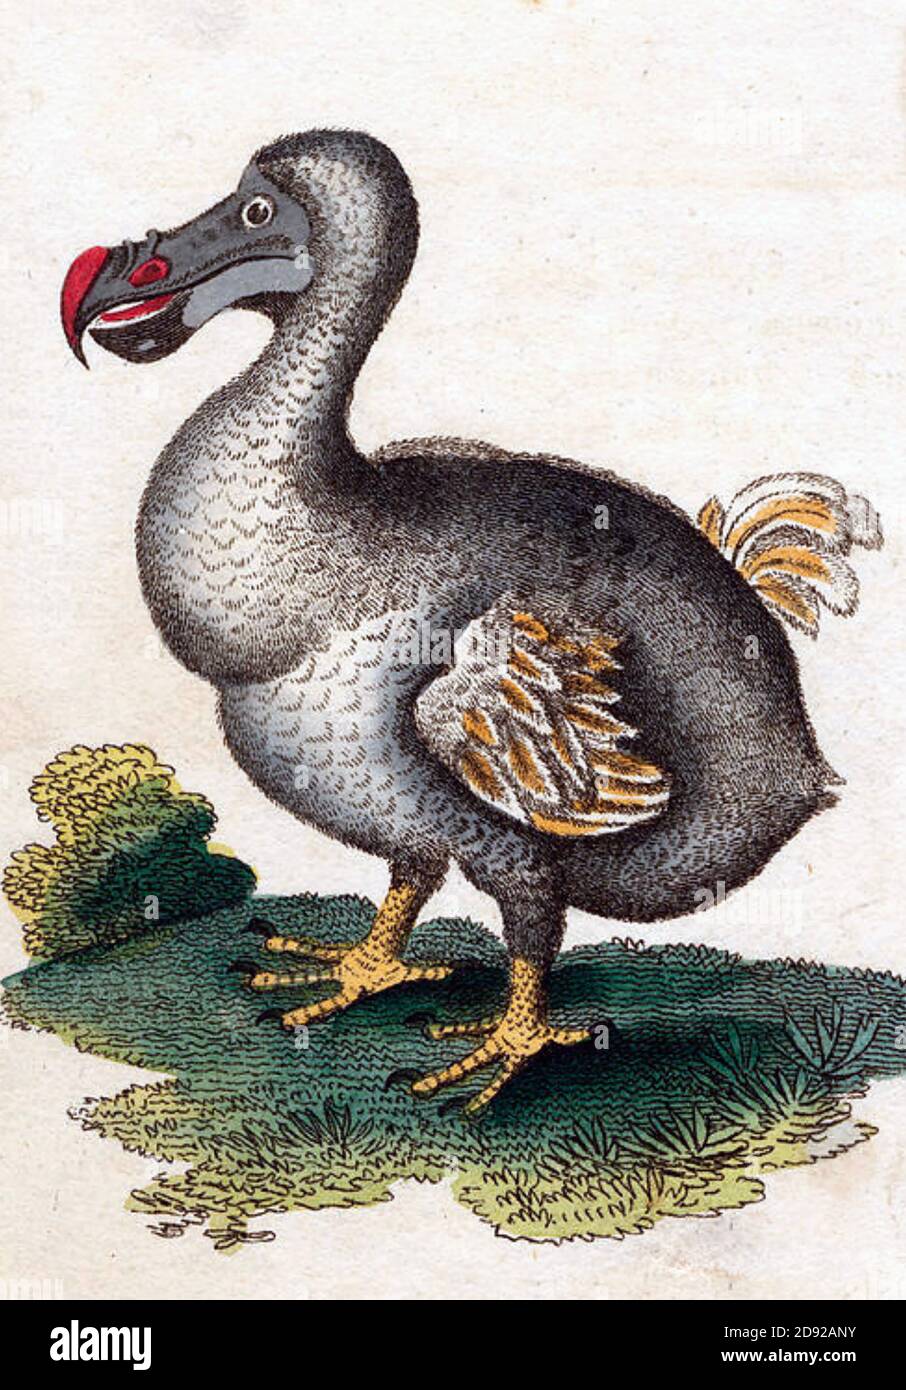 DODO Raphus cucullatus oiseau sans vol éteint dans une illustration de 1798 Banque D'Images